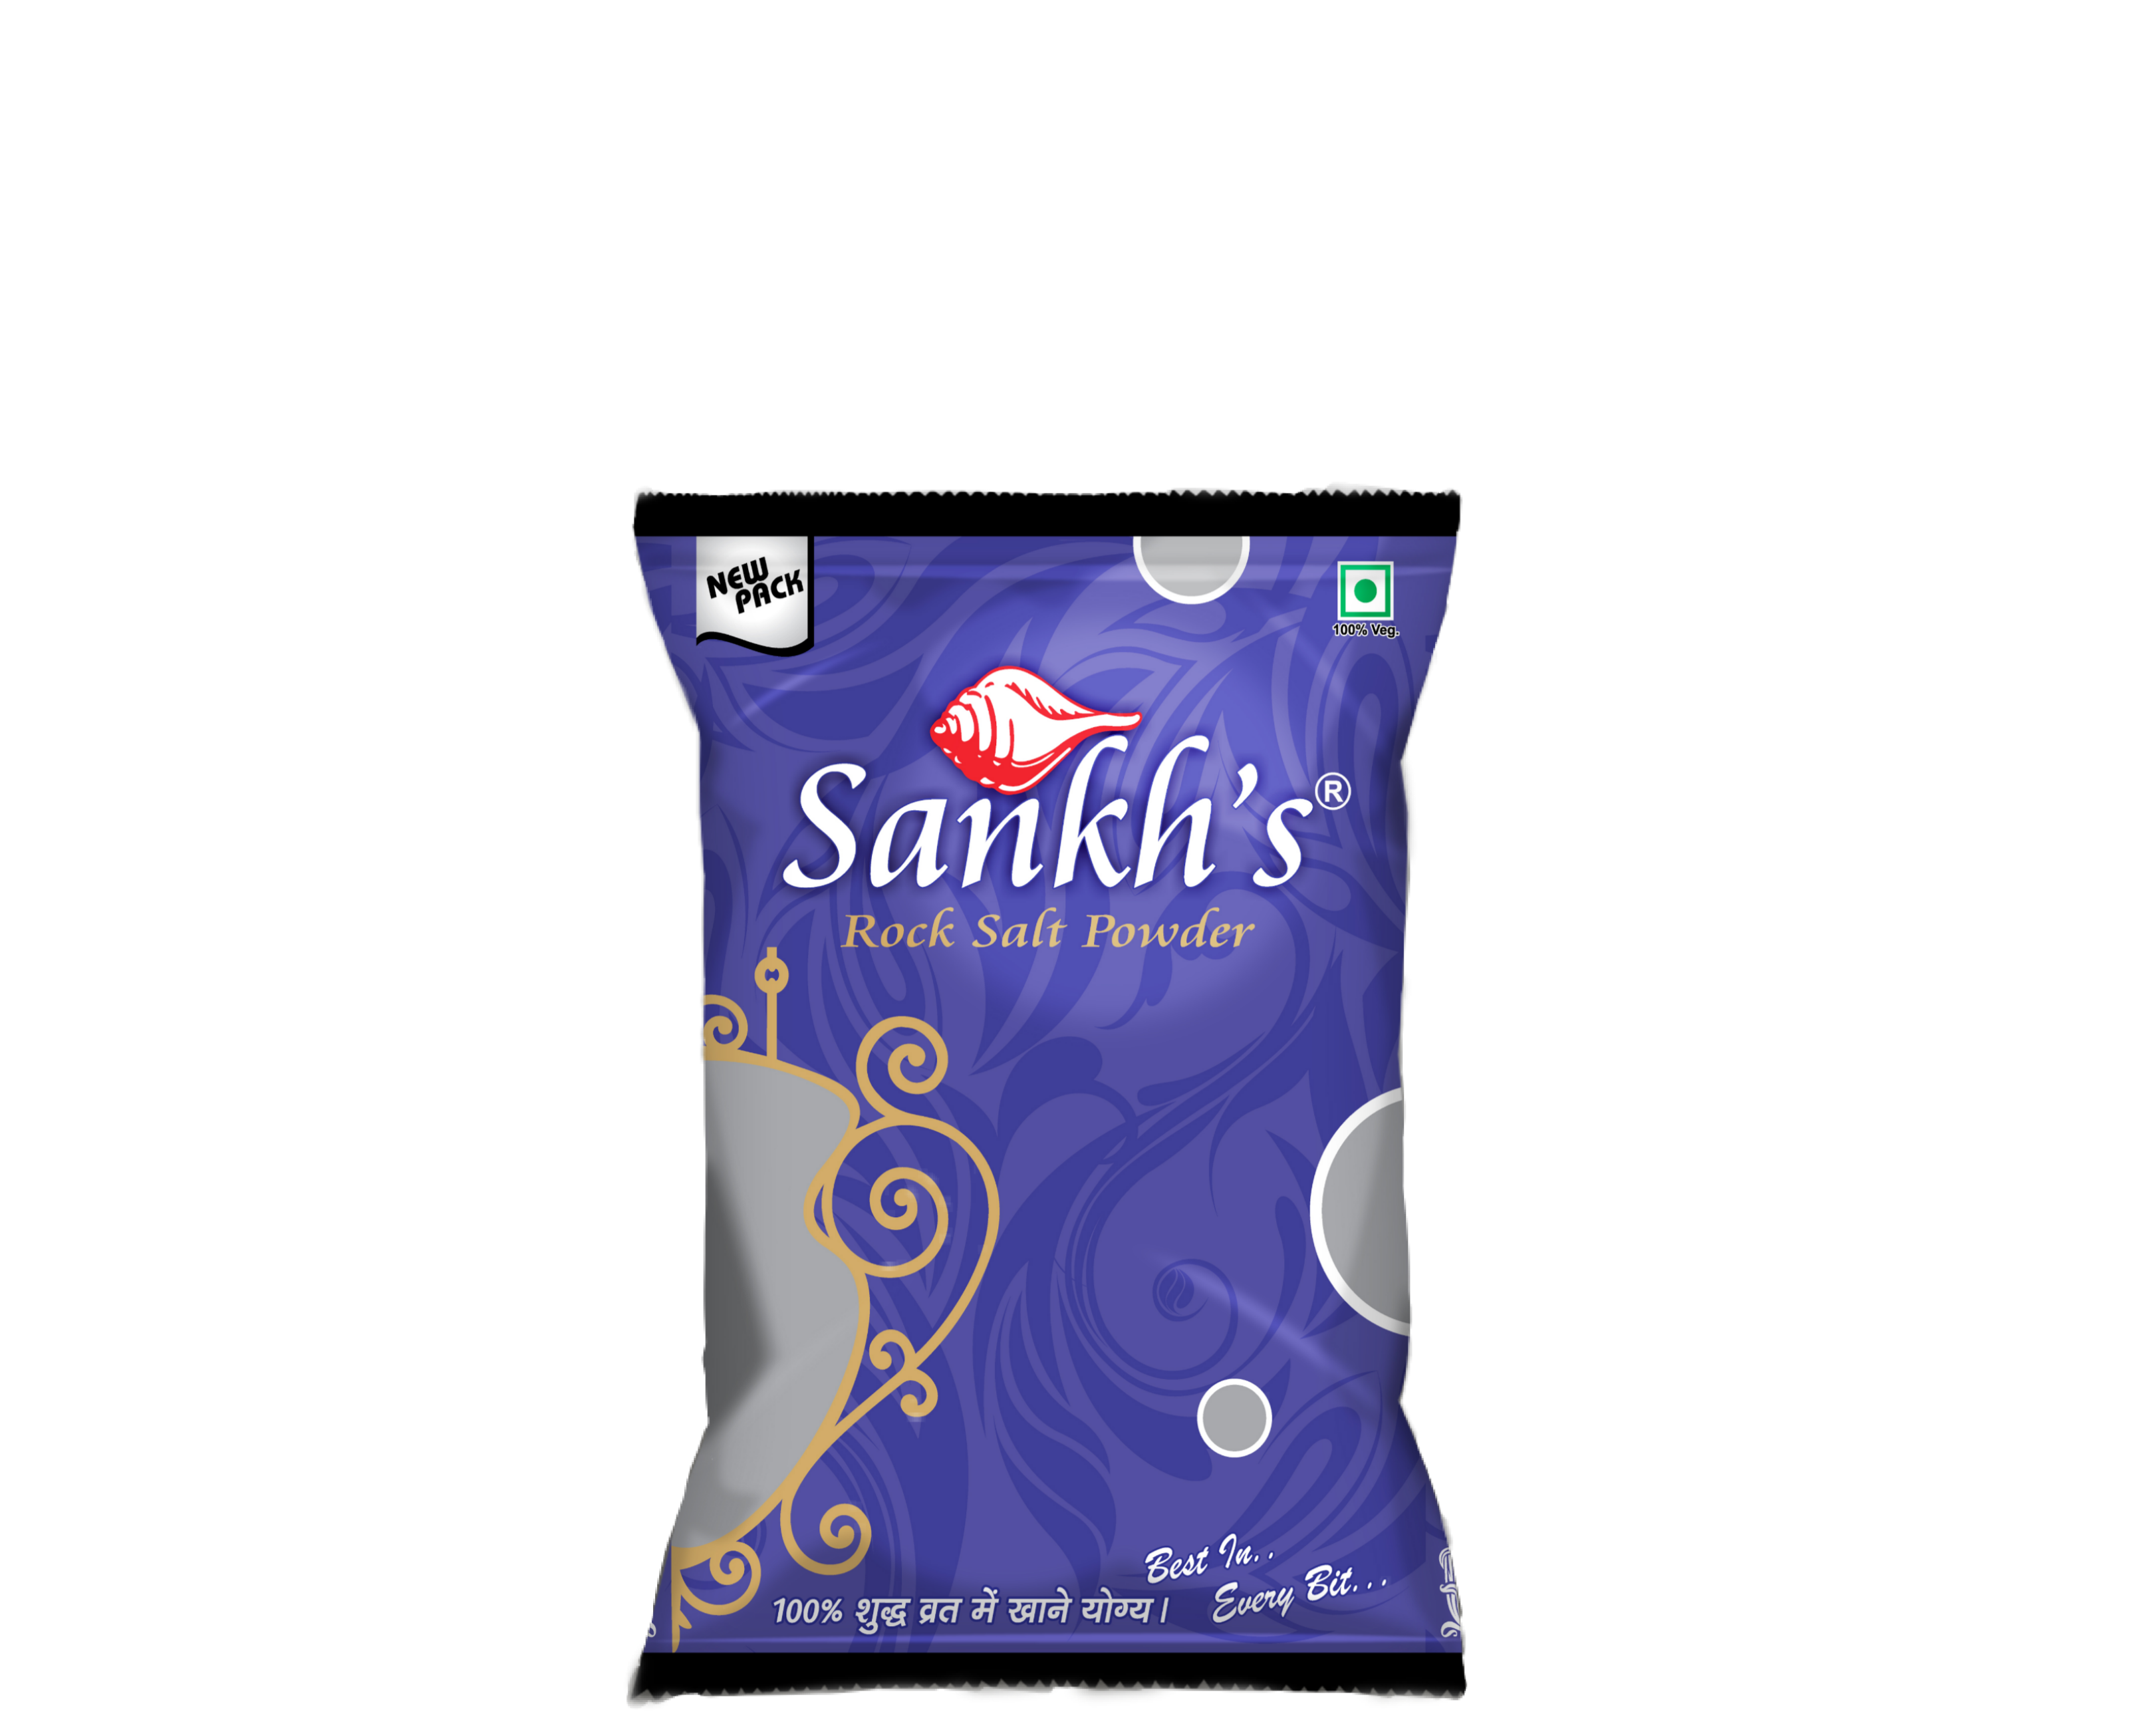 Regular Sankh Rock Salt